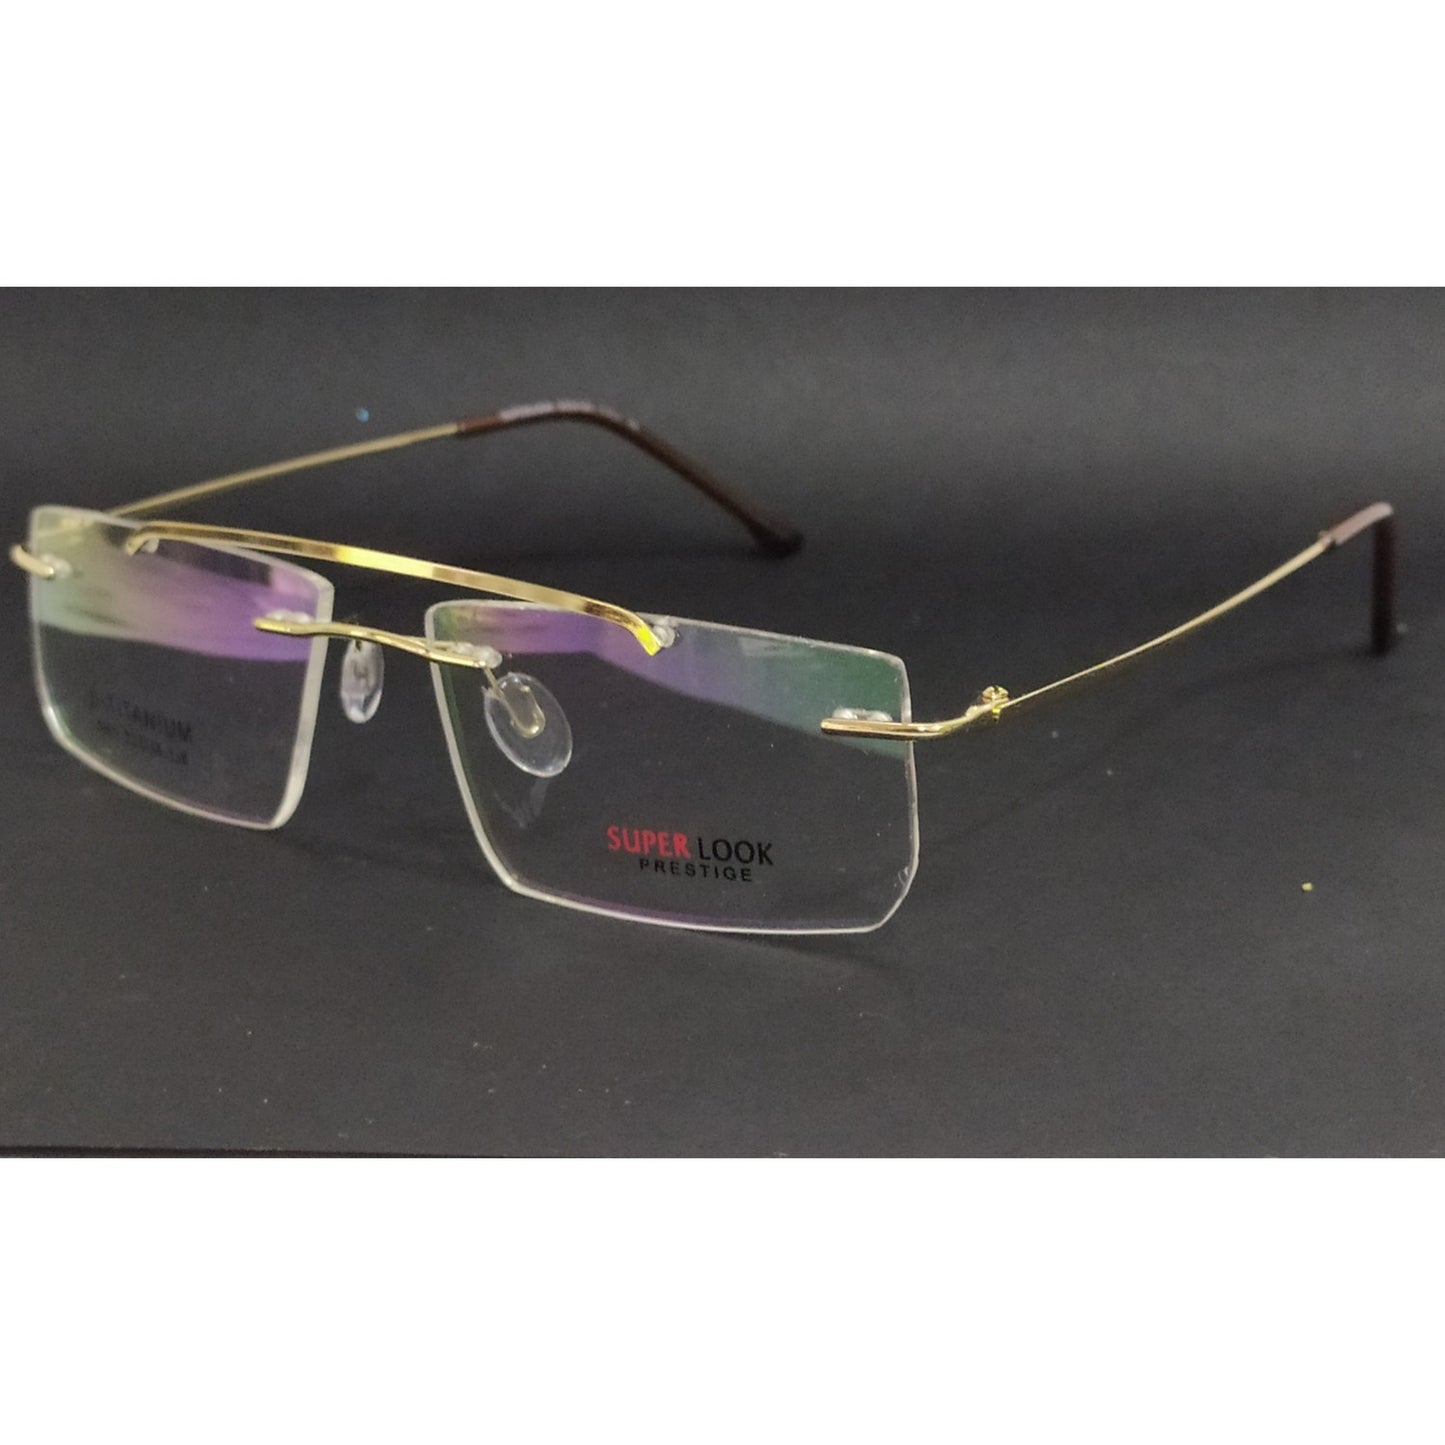 Gold Rectangle Rimless Glasses Frameless Specs with Blue Light Filter Lenses